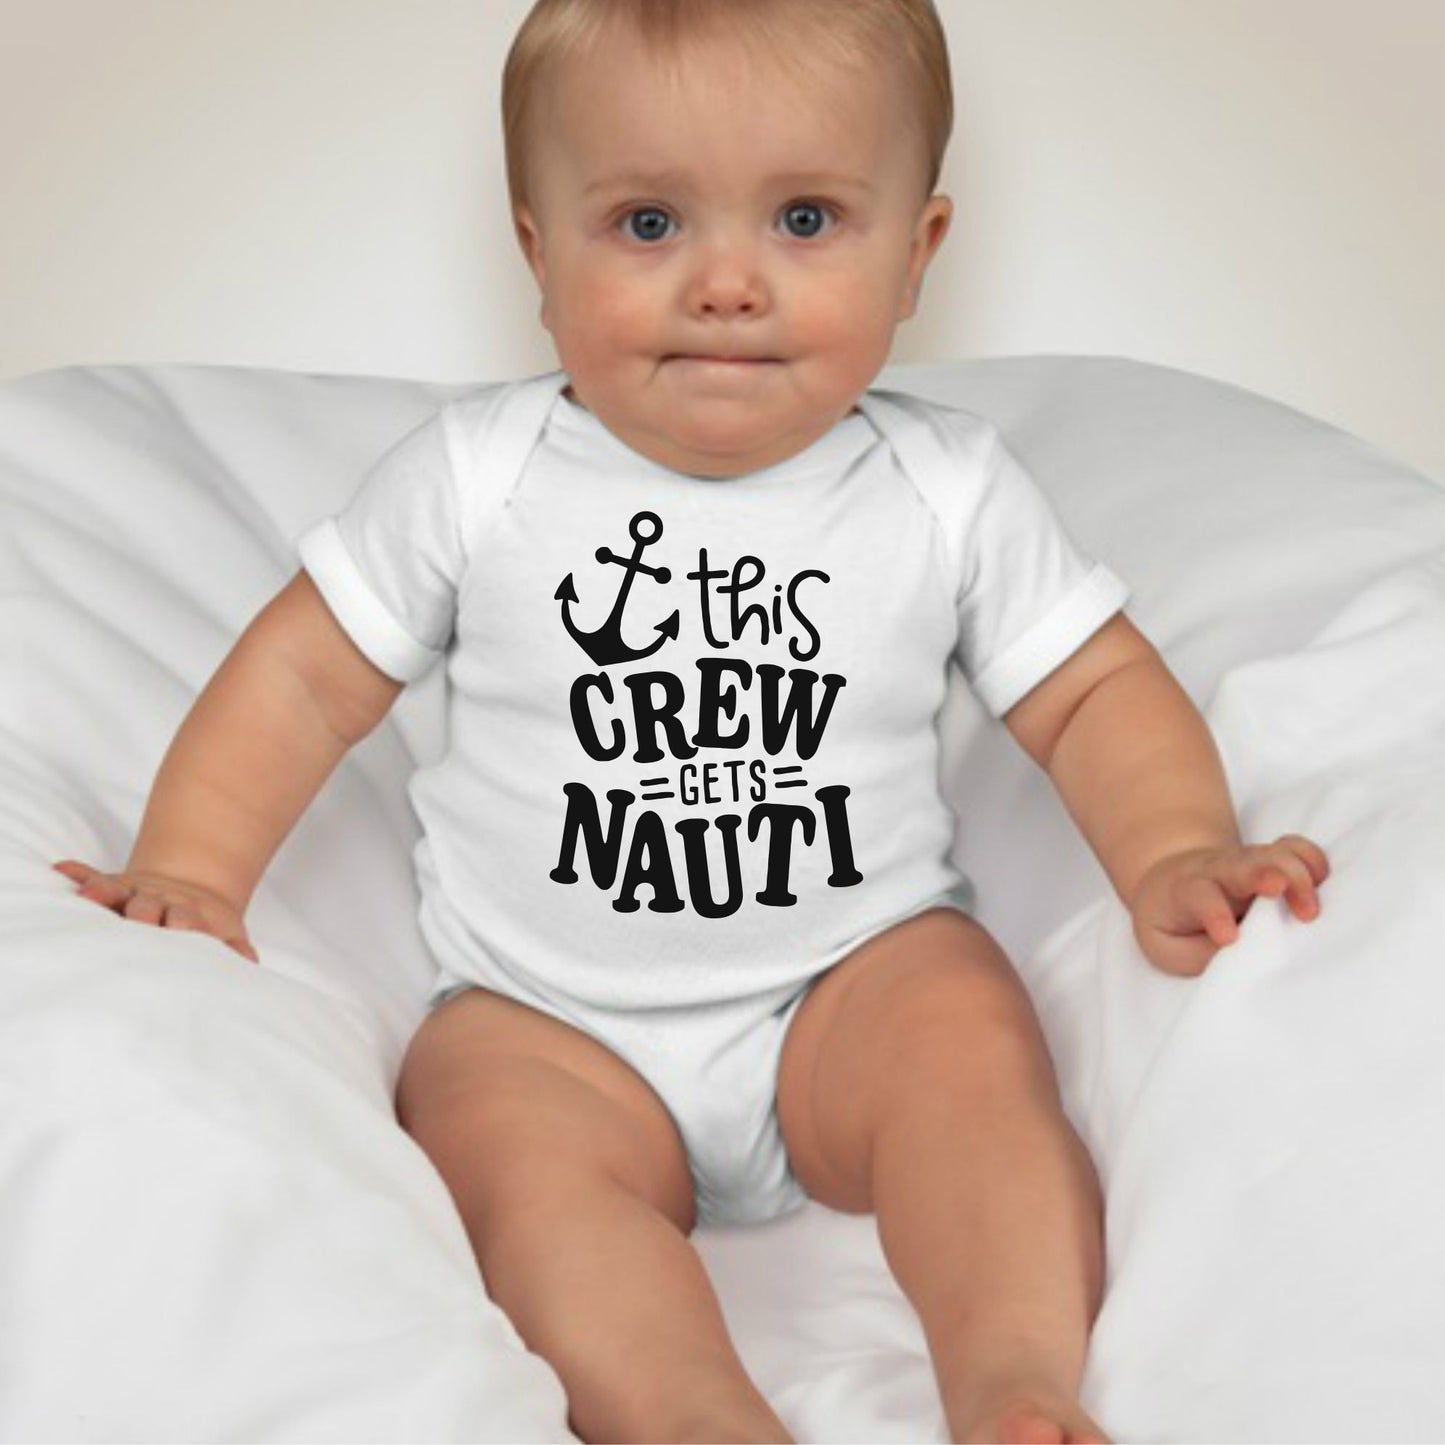 Baby Statement Onesies - This Crew Gets Nauti